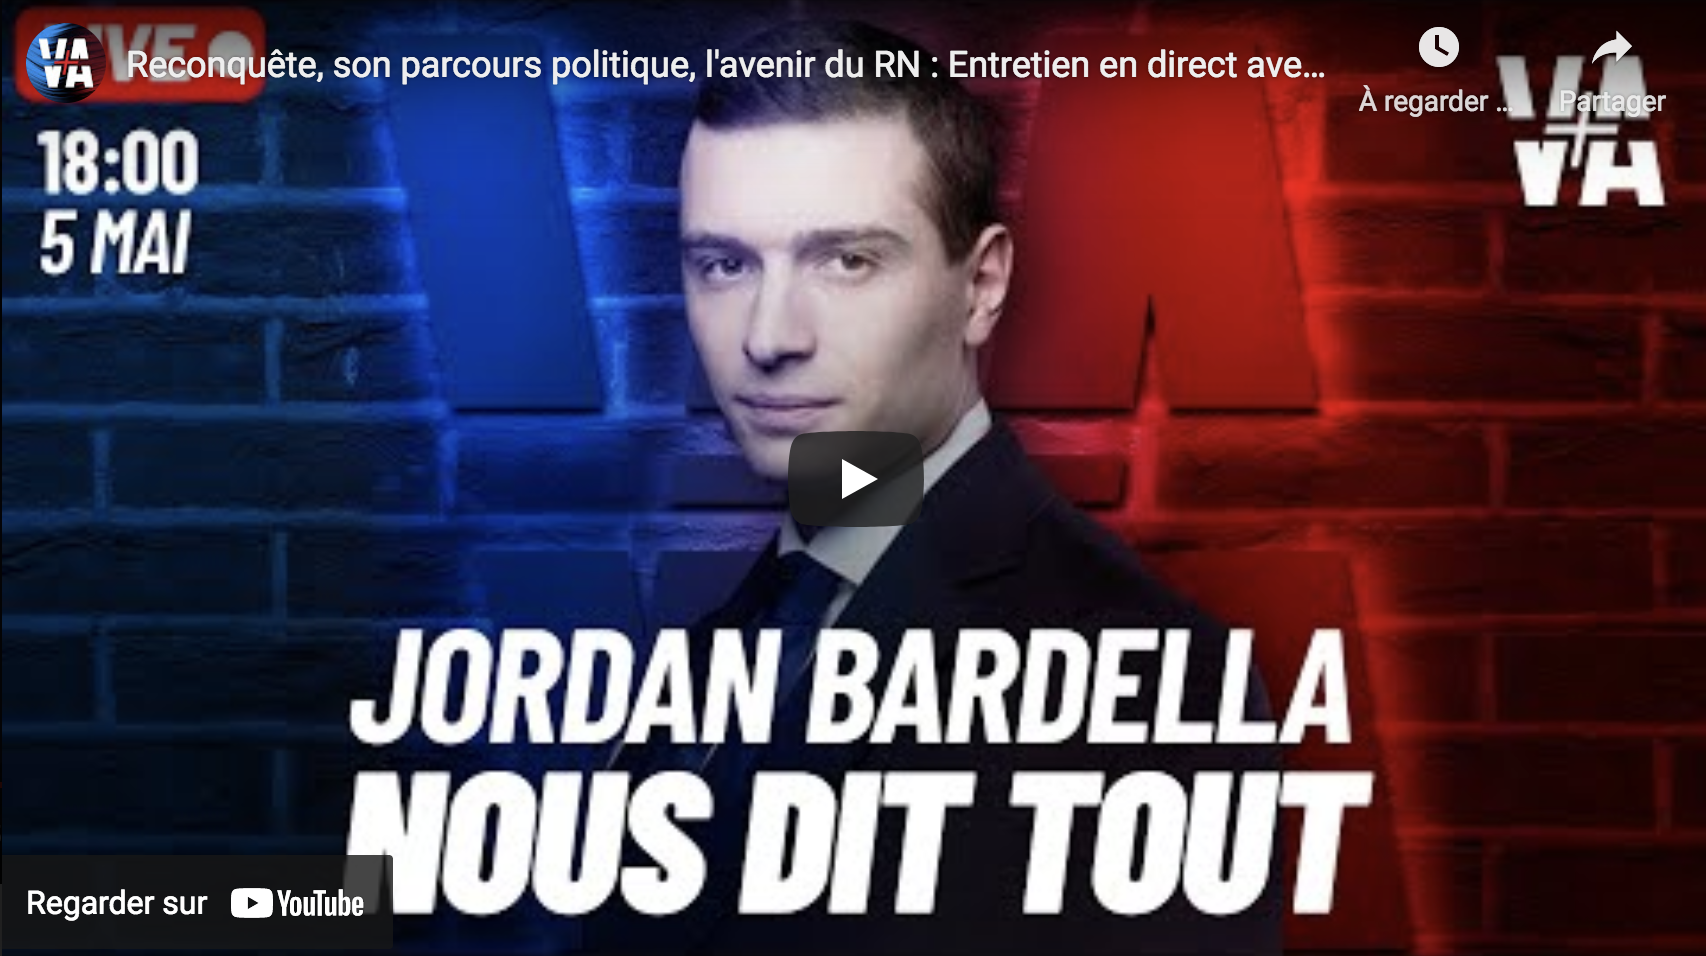 Reconquête, son parcours politique, l’avenir du RN : Entretien en direct avec Jordan Bardella (VIDÉO)